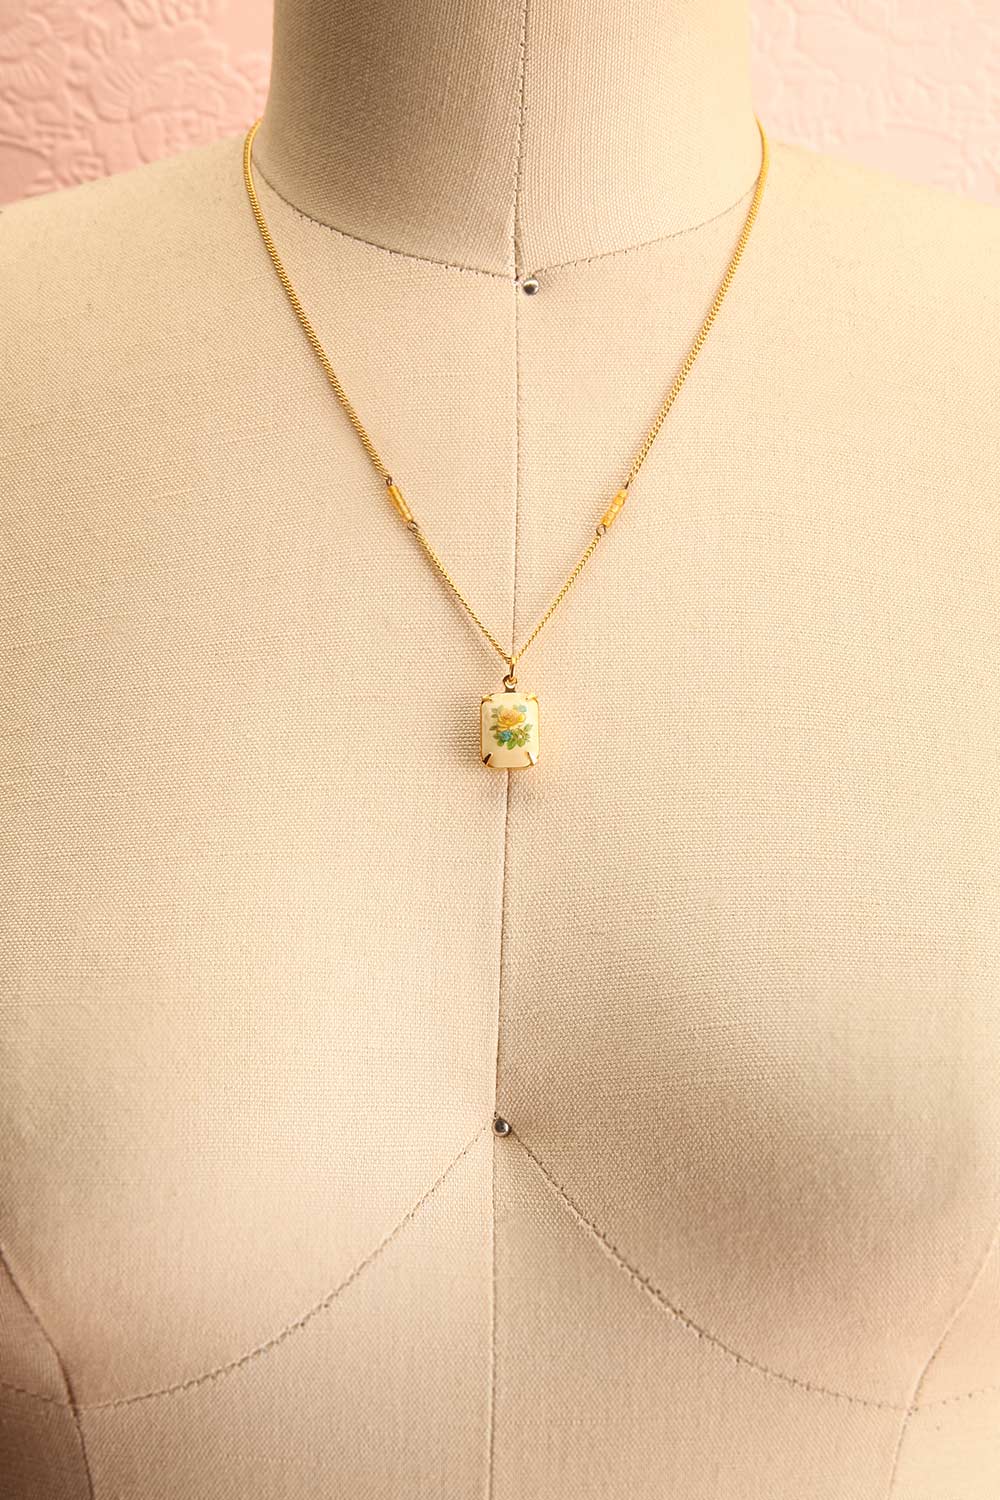 Mae West Jaune Dainty Golden Floral Pendant Necklace | Boutique 1861 3